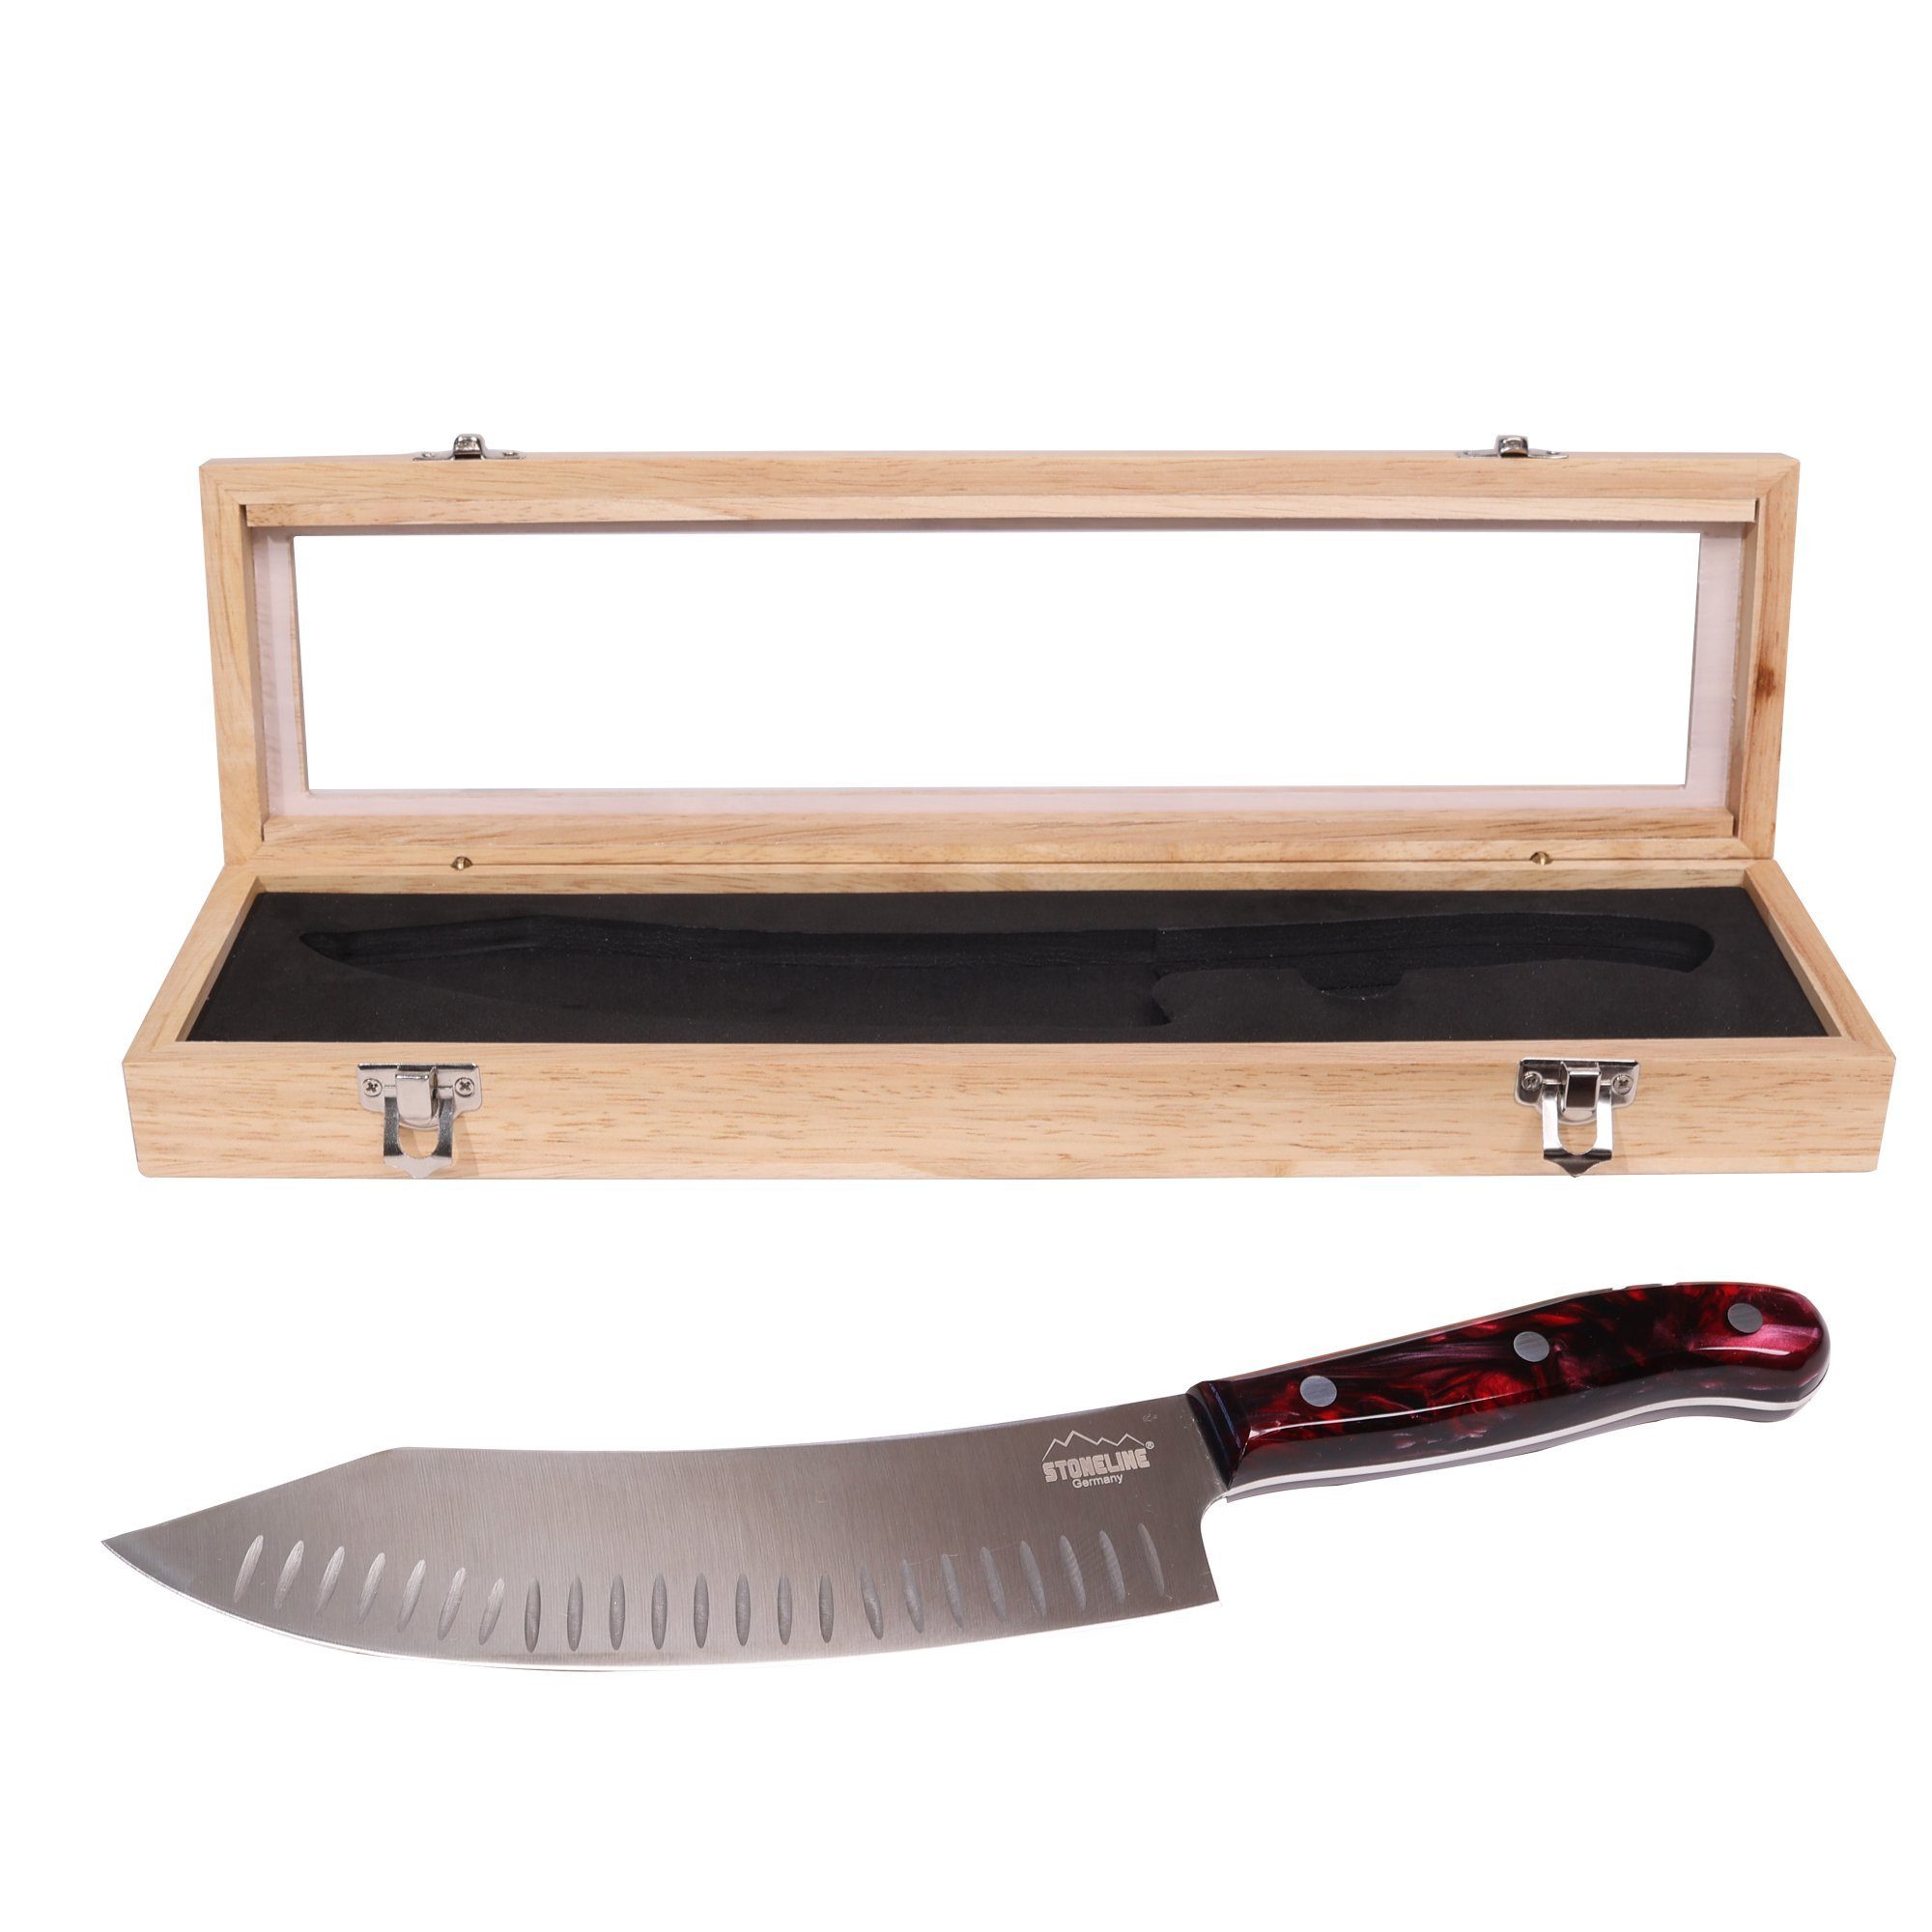 edler in STONELINE Messer-Set cm, Chefmesser 33,2 Aufbewahrungsbox aus Holz